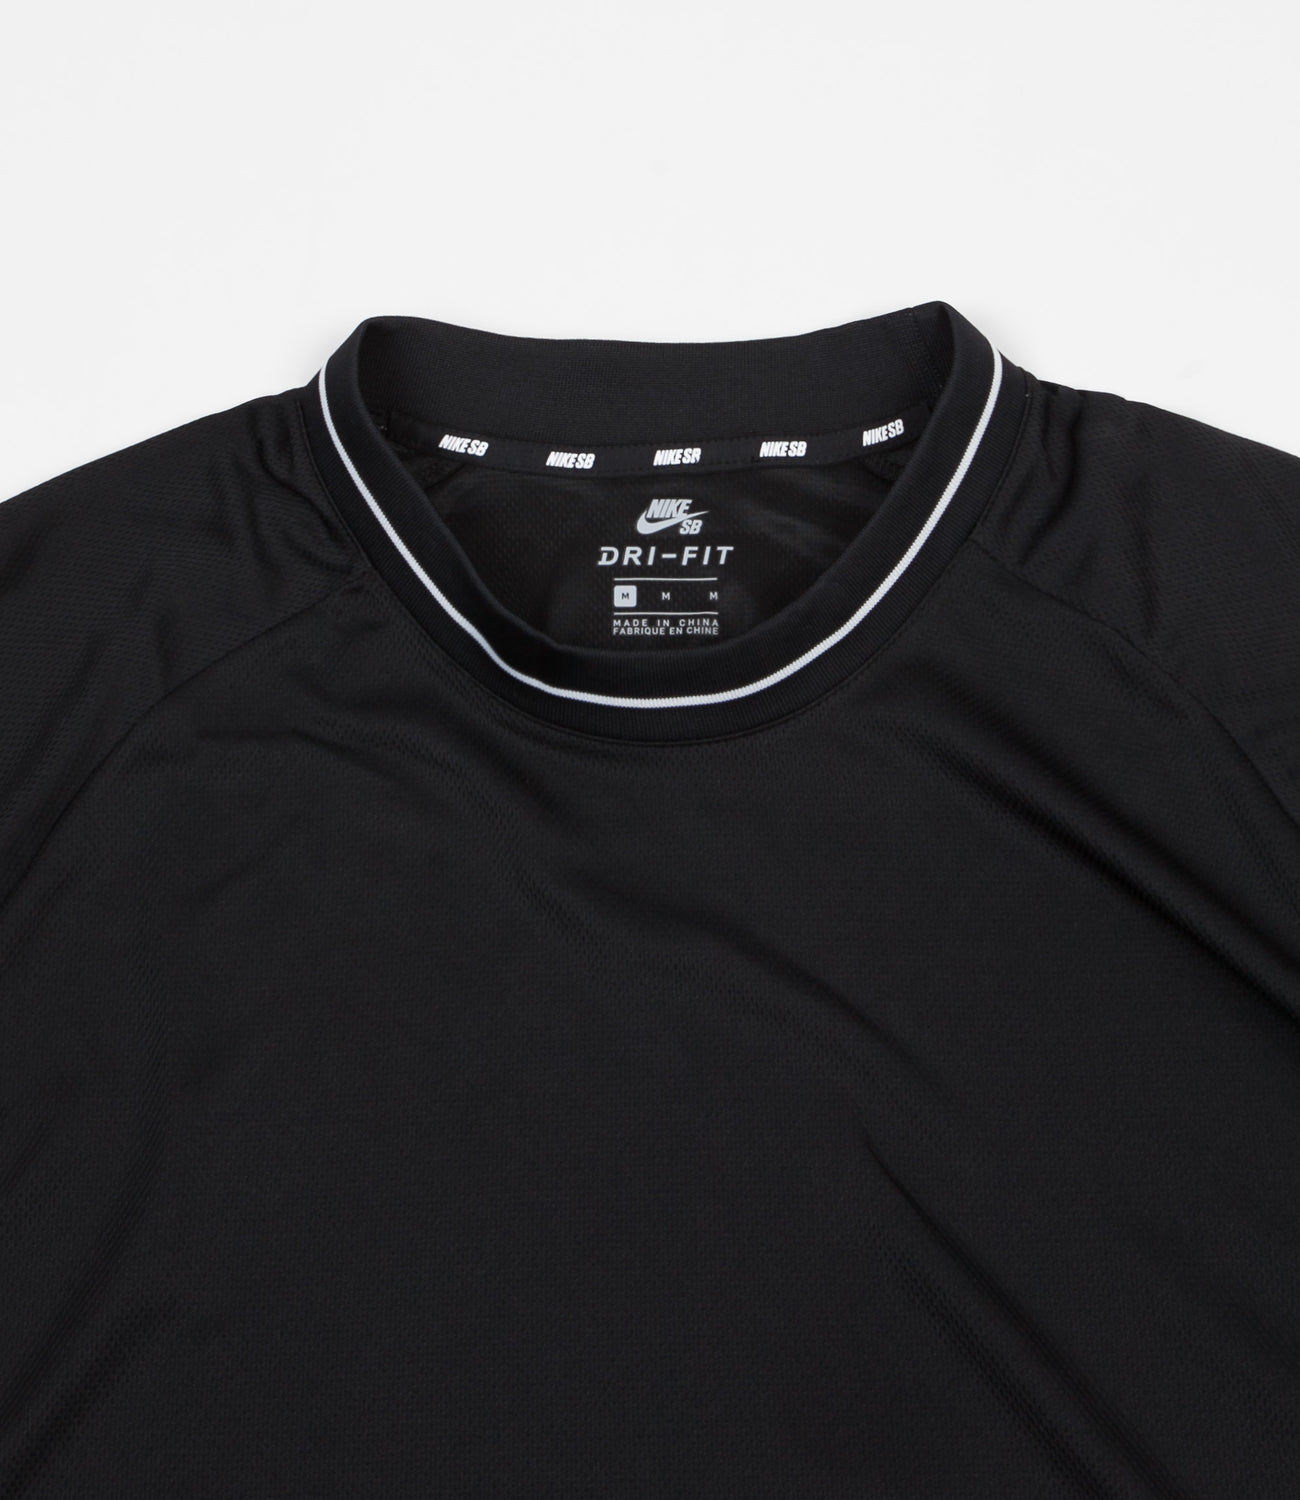 Tahití Velas Delgado Nike SB Dri-FIT Mesh T-Shirt - Black / Black | Flatspot